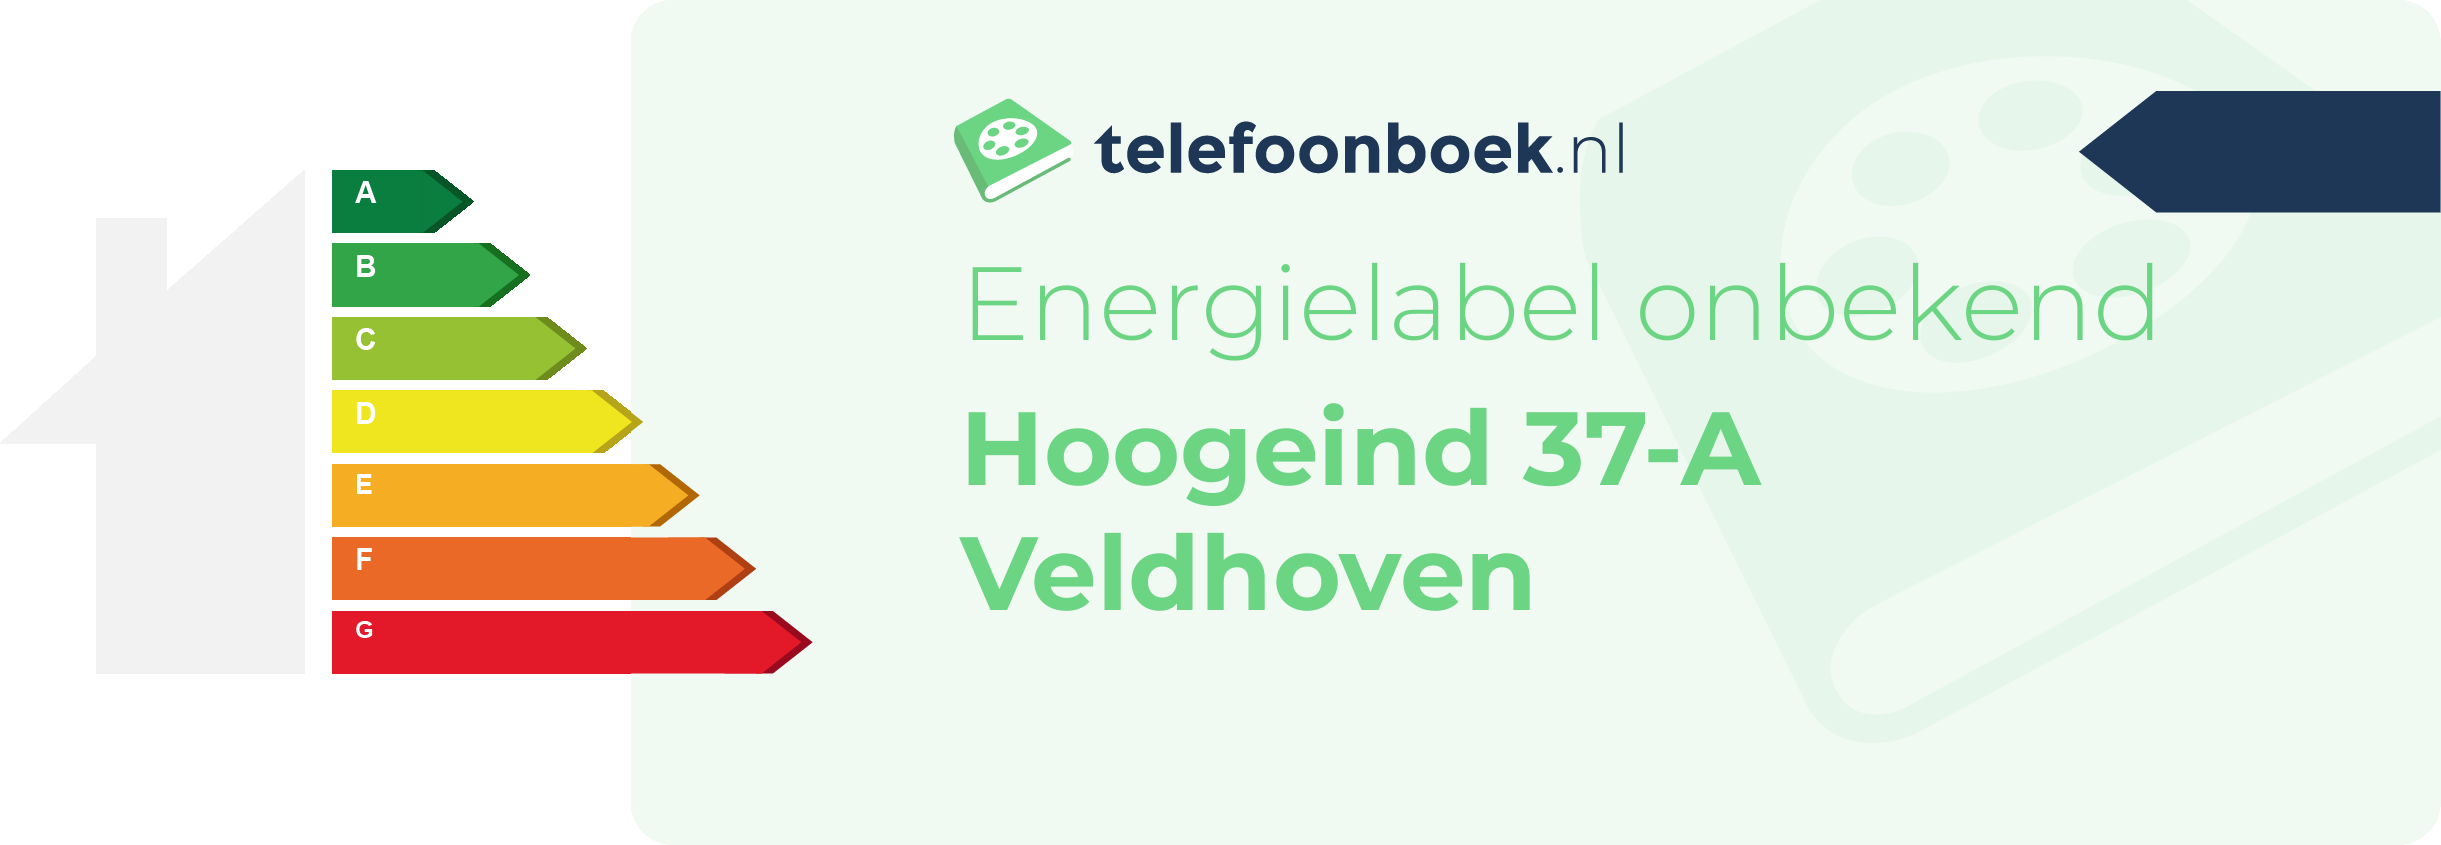 Energielabel Hoogeind 37-A Veldhoven